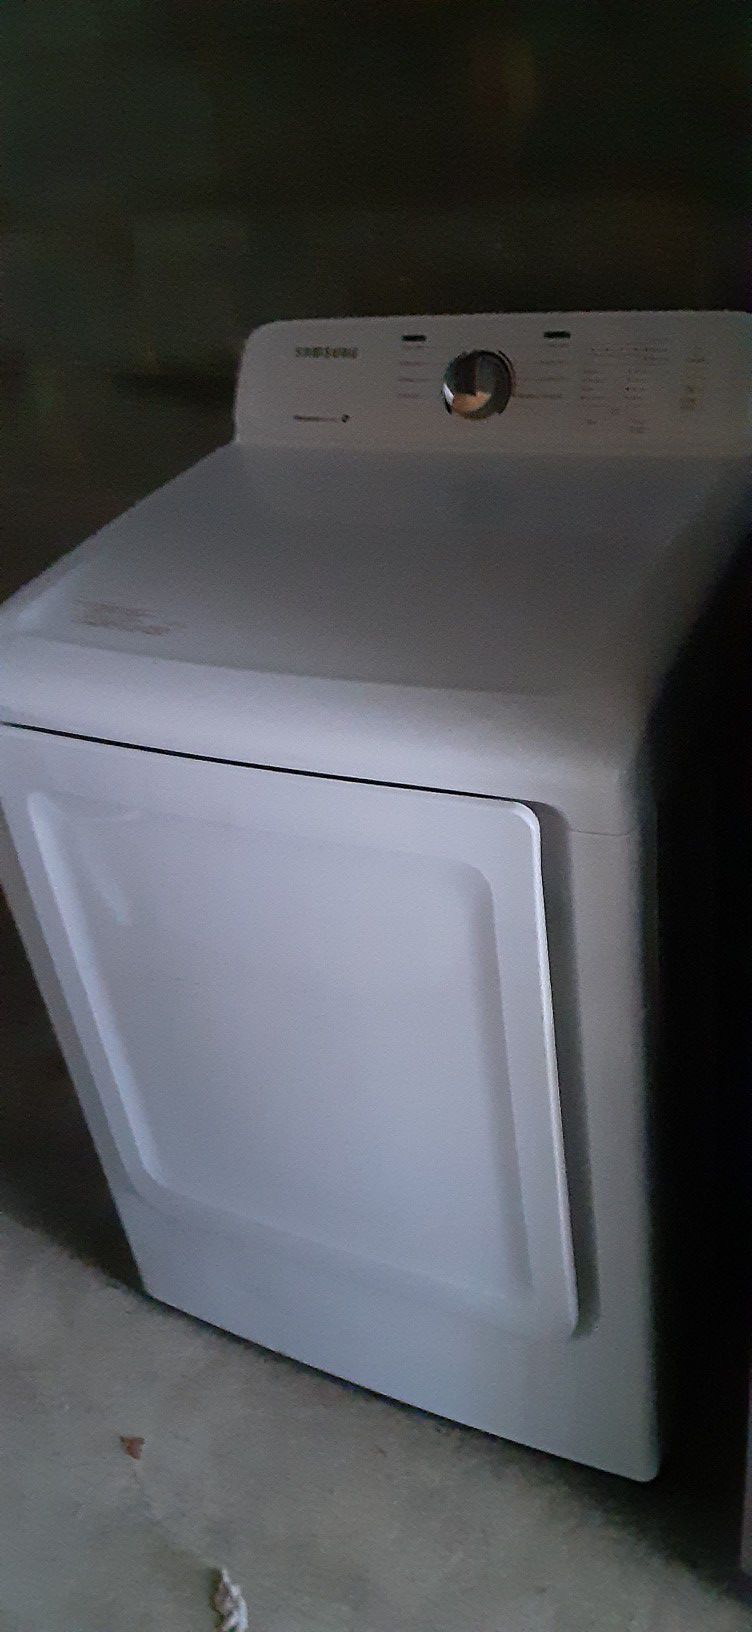 Samsung dryer